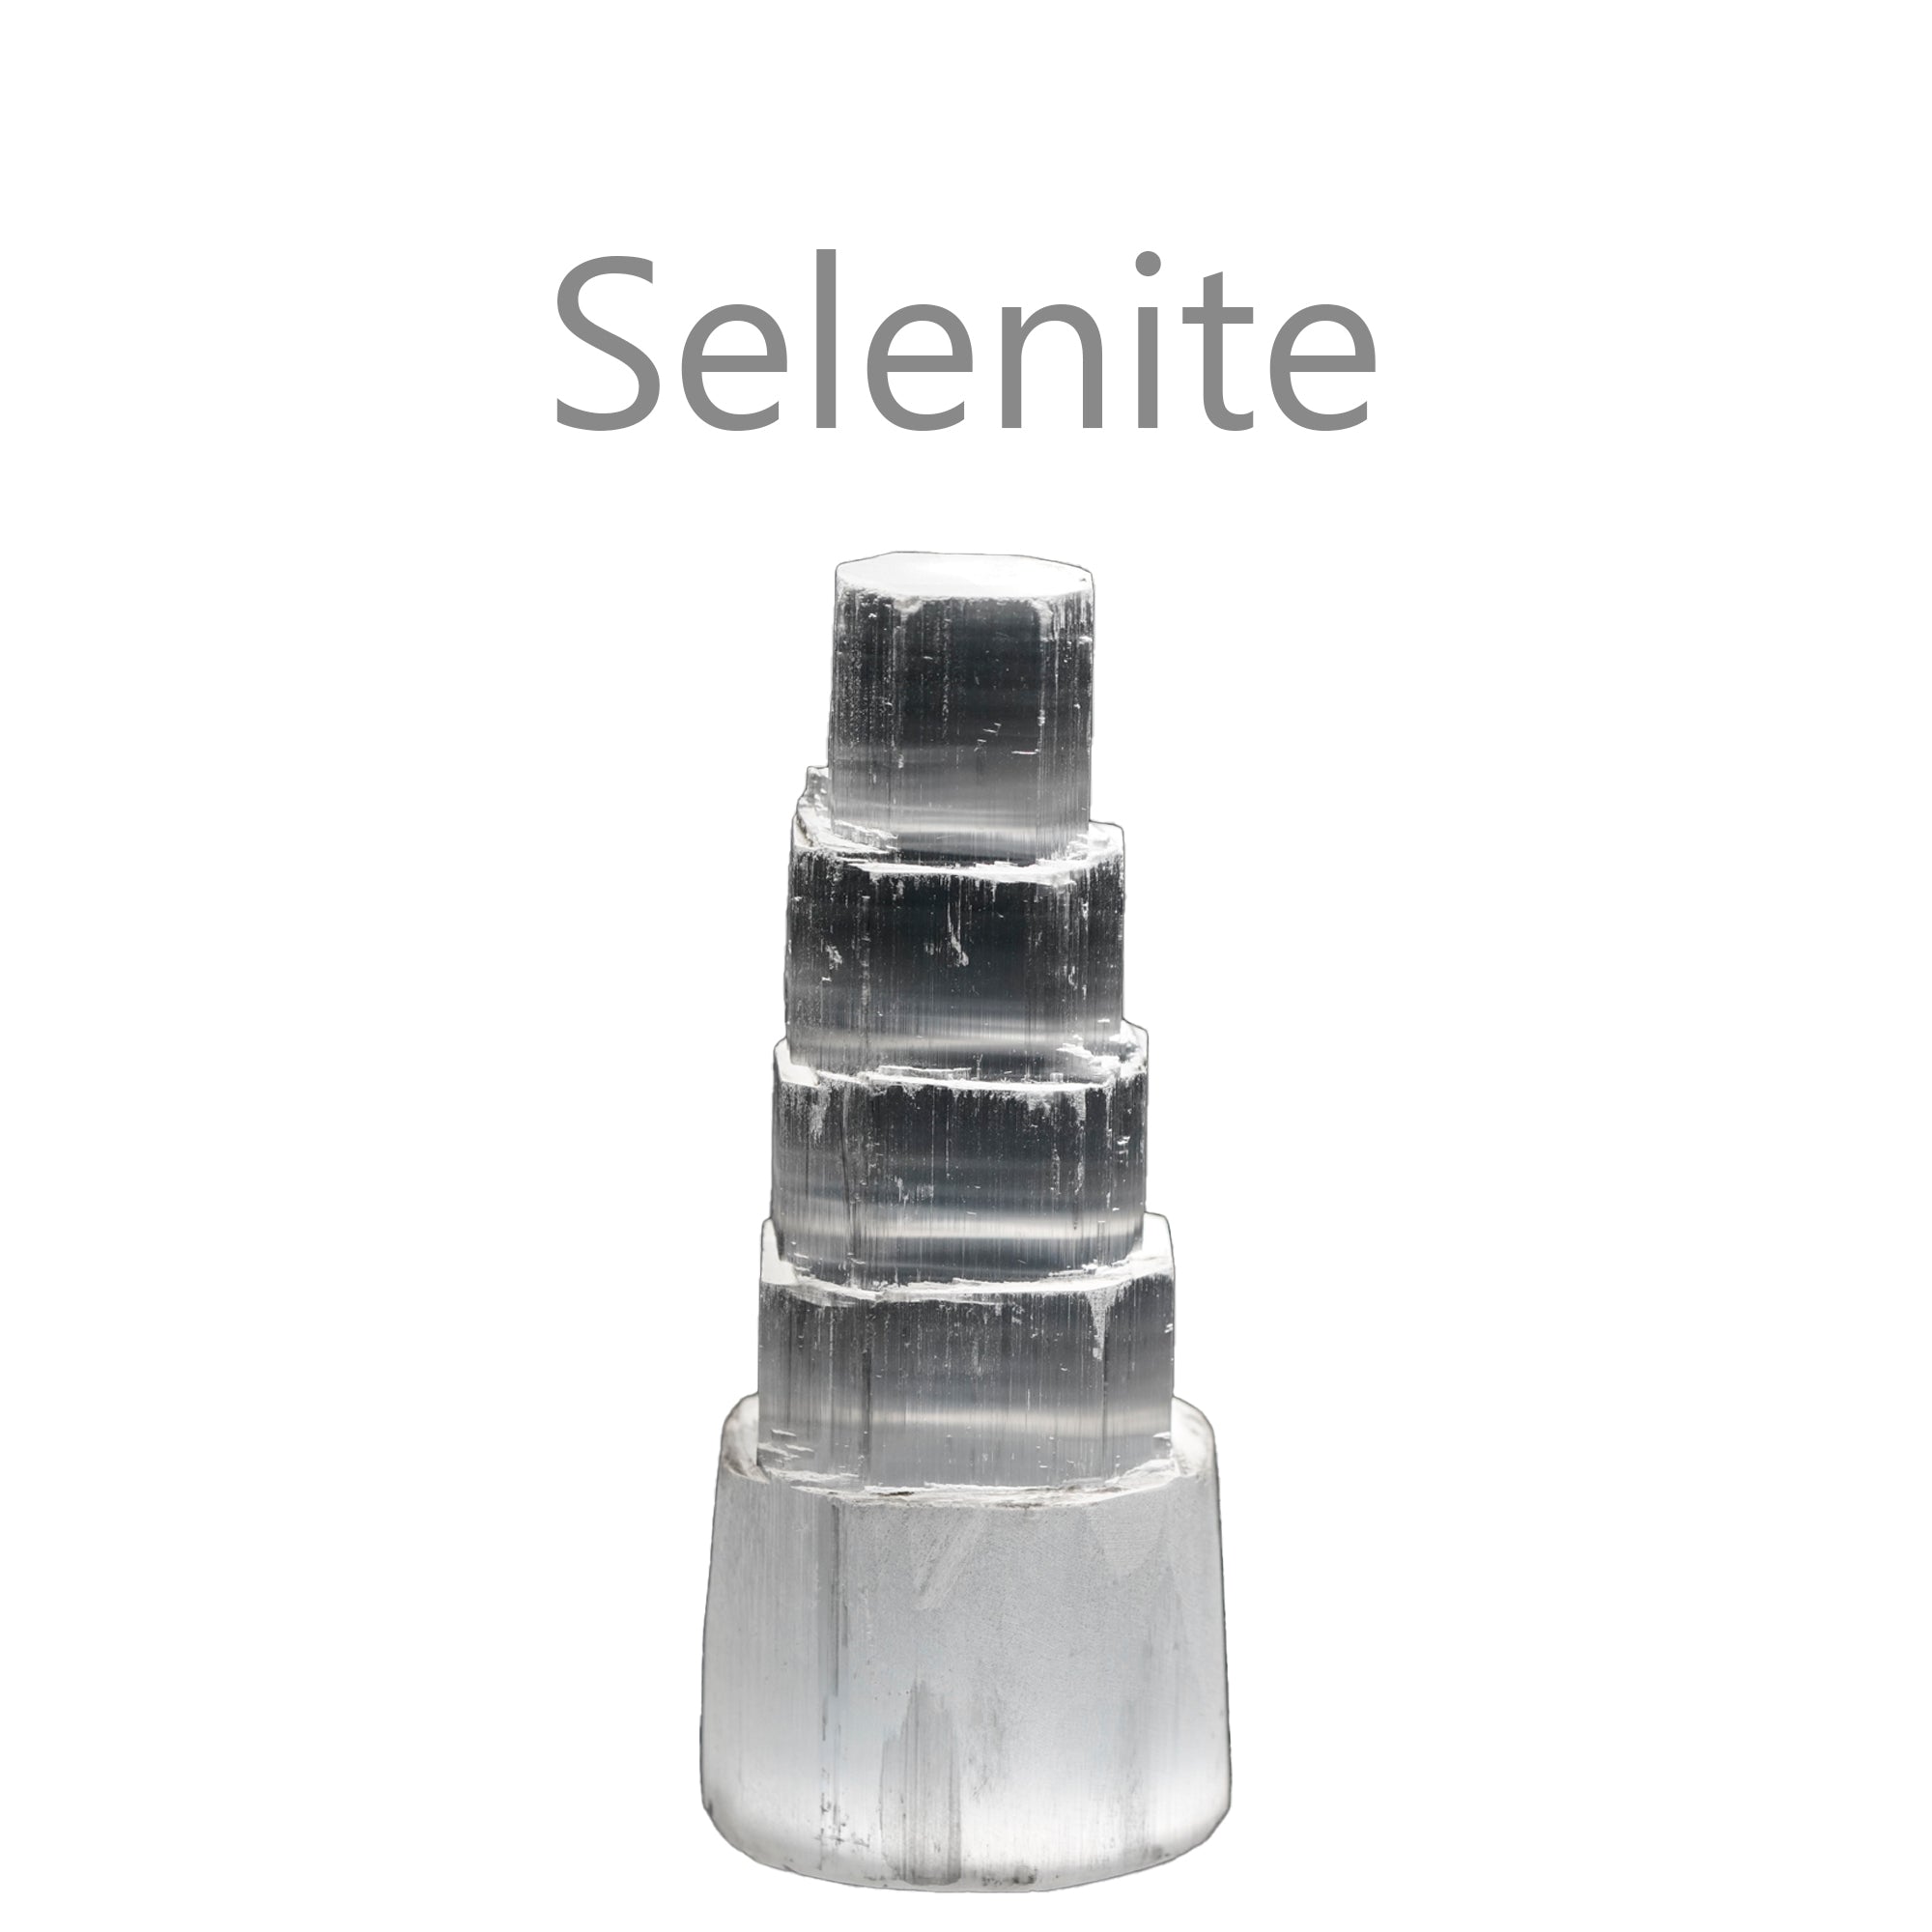 Selenite